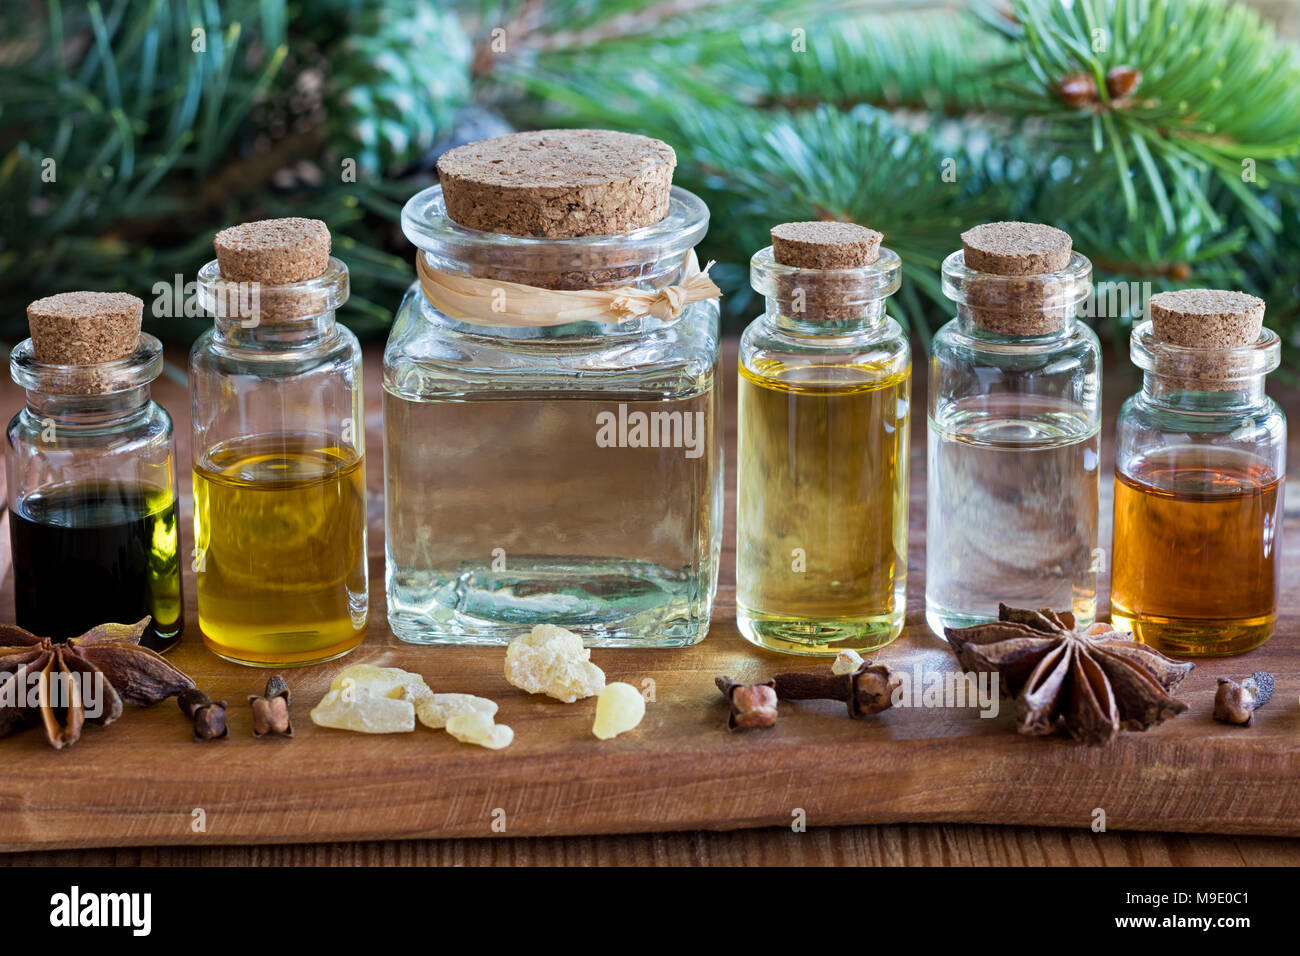 Auswahl von ätherischen Ölen mit weihnachtlichen Gewürzen und Zutaten - Fichte, Kiefer, Nelke, Sternanis, Weihrauch, auf einer hölzernen Hintergrund Stockfoto